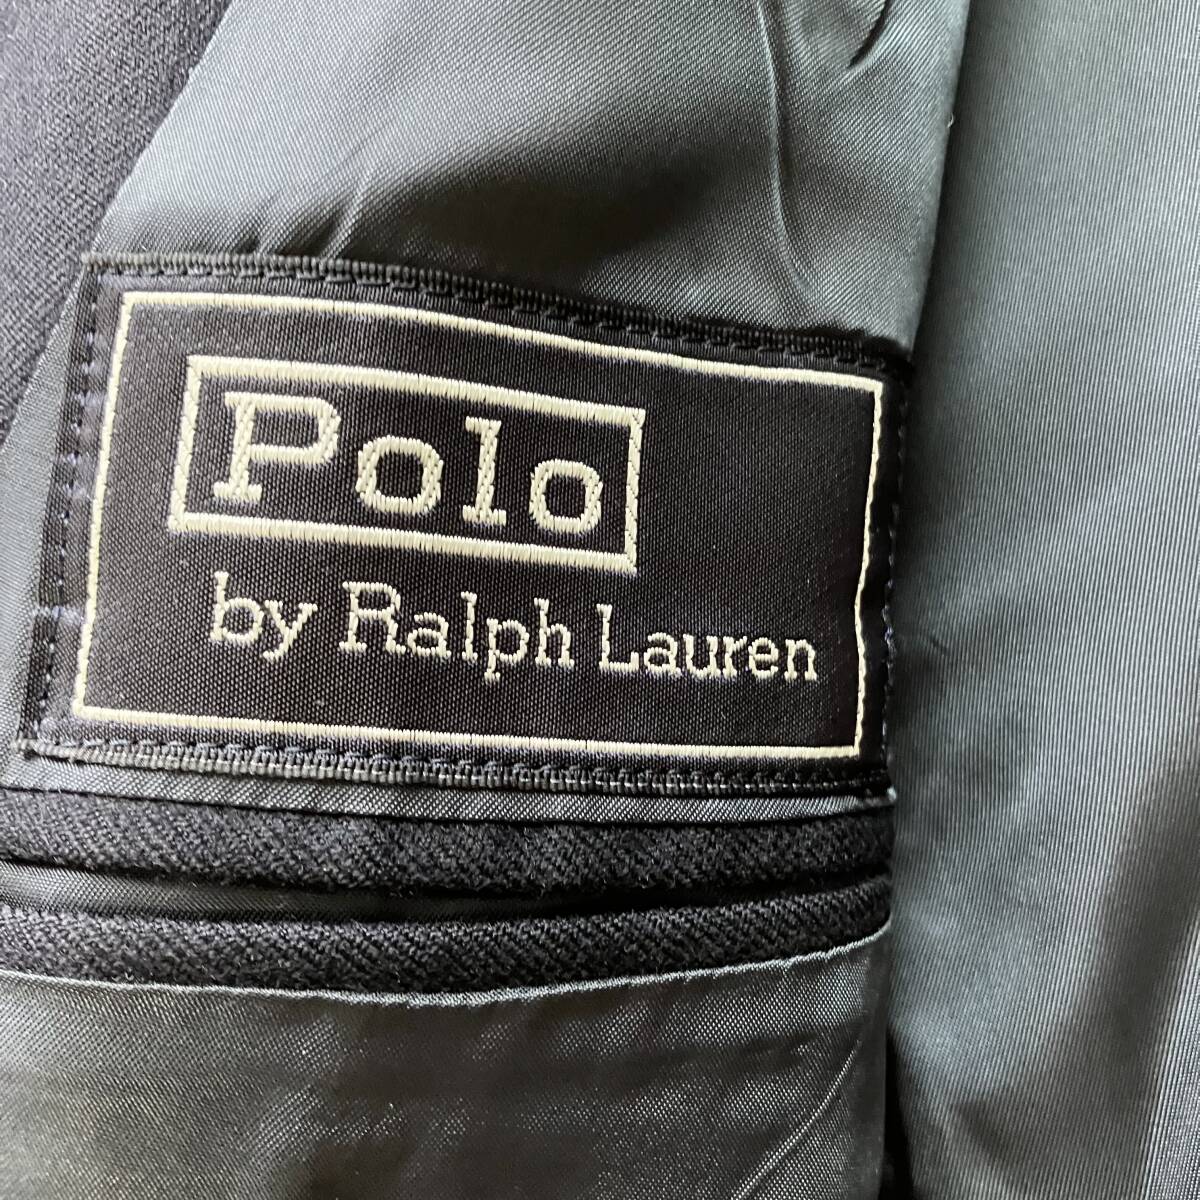  прекрасный товар XL ранг * Polo Ralph Lauren POLO RALPH LAUREN темно-синий блейзер серебряный кнопка tailored jacket одиночный 2B темно-синий мужской 